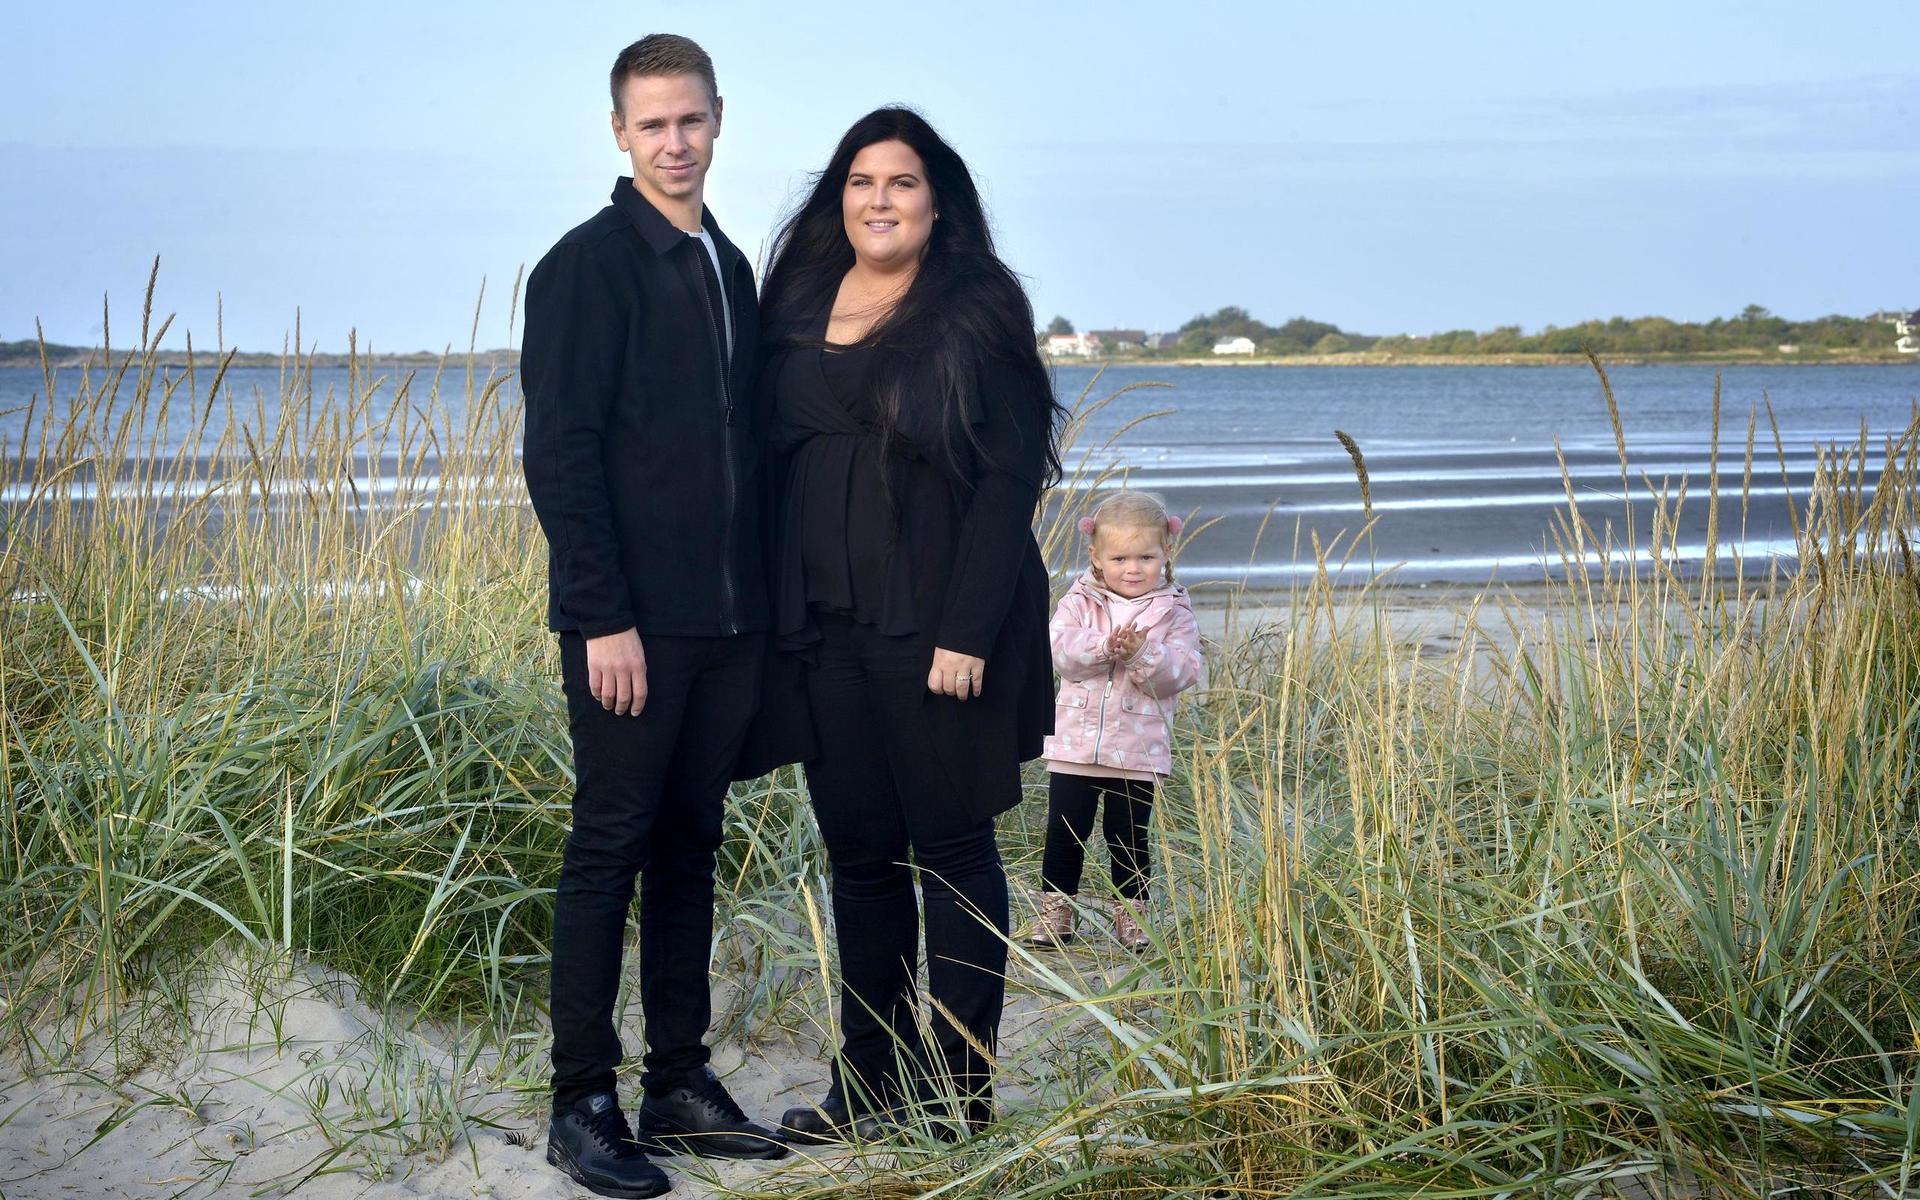 Säljare Michael Kannerstedt, 29 år, och ekonomiassistent Lina Gustafsson, 27 år, som skulle ha gift sig 8 augusti är några av dem som avbokat.